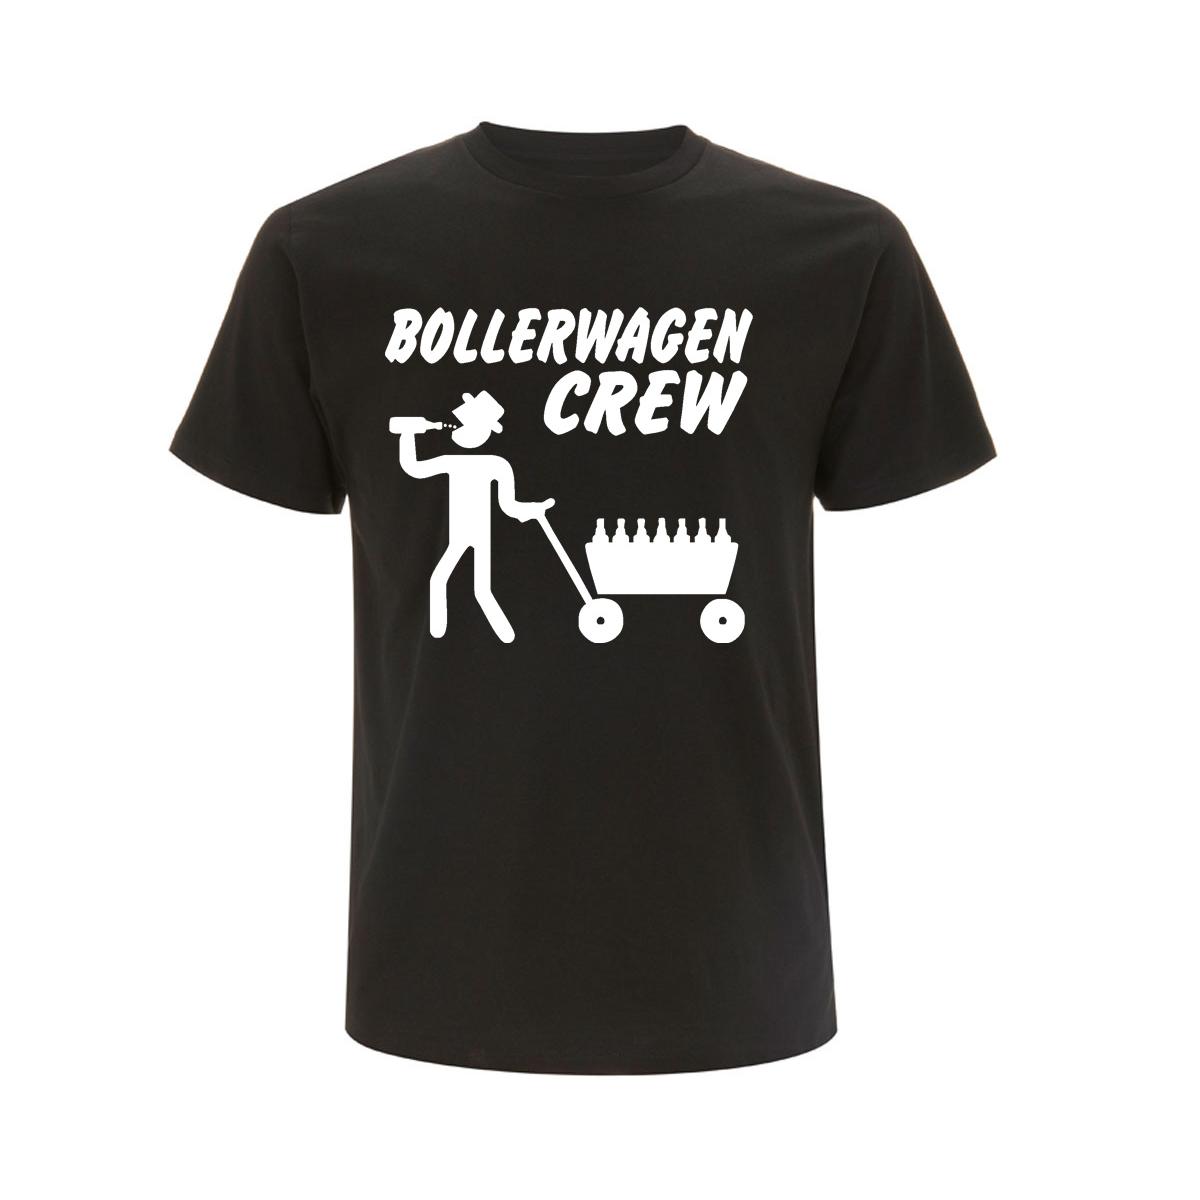 Bollerwagen Crew - Männer T-Shirt - schwarz